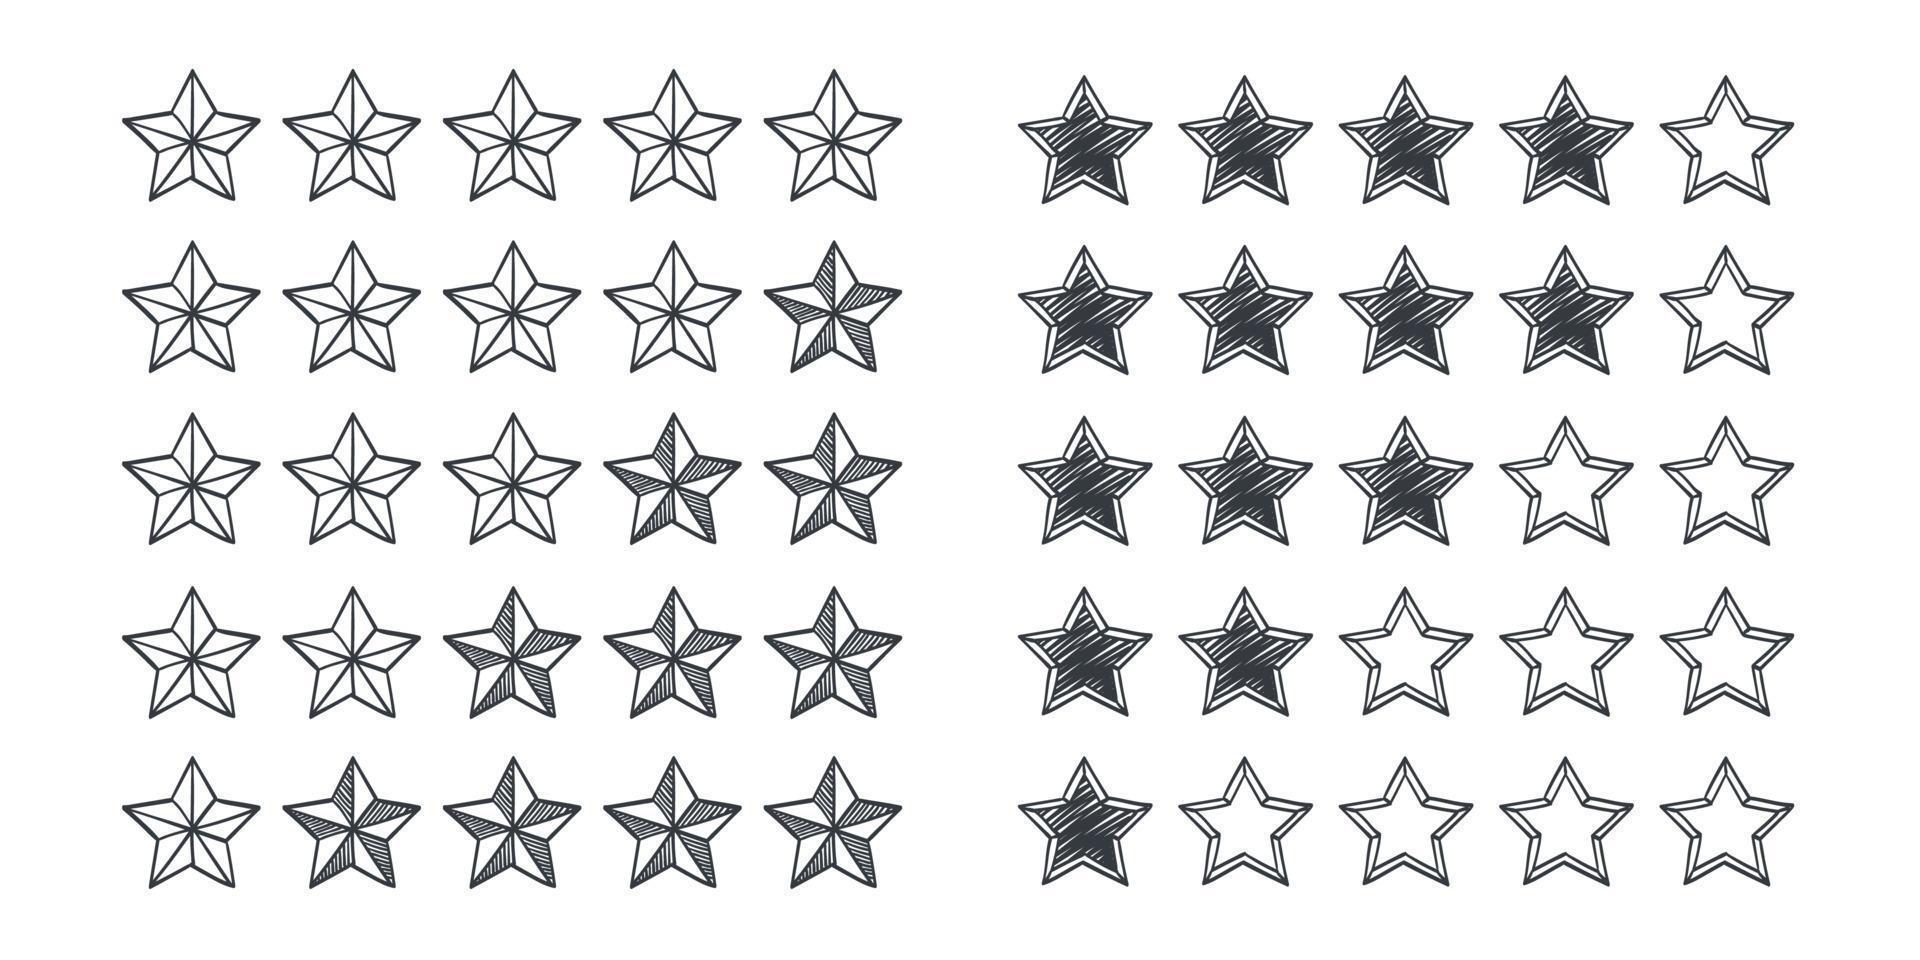 signos de calificación de calidad. concepto de iconos de estrellas. iconos dibujados de estrellas. ilustración vectorial vector